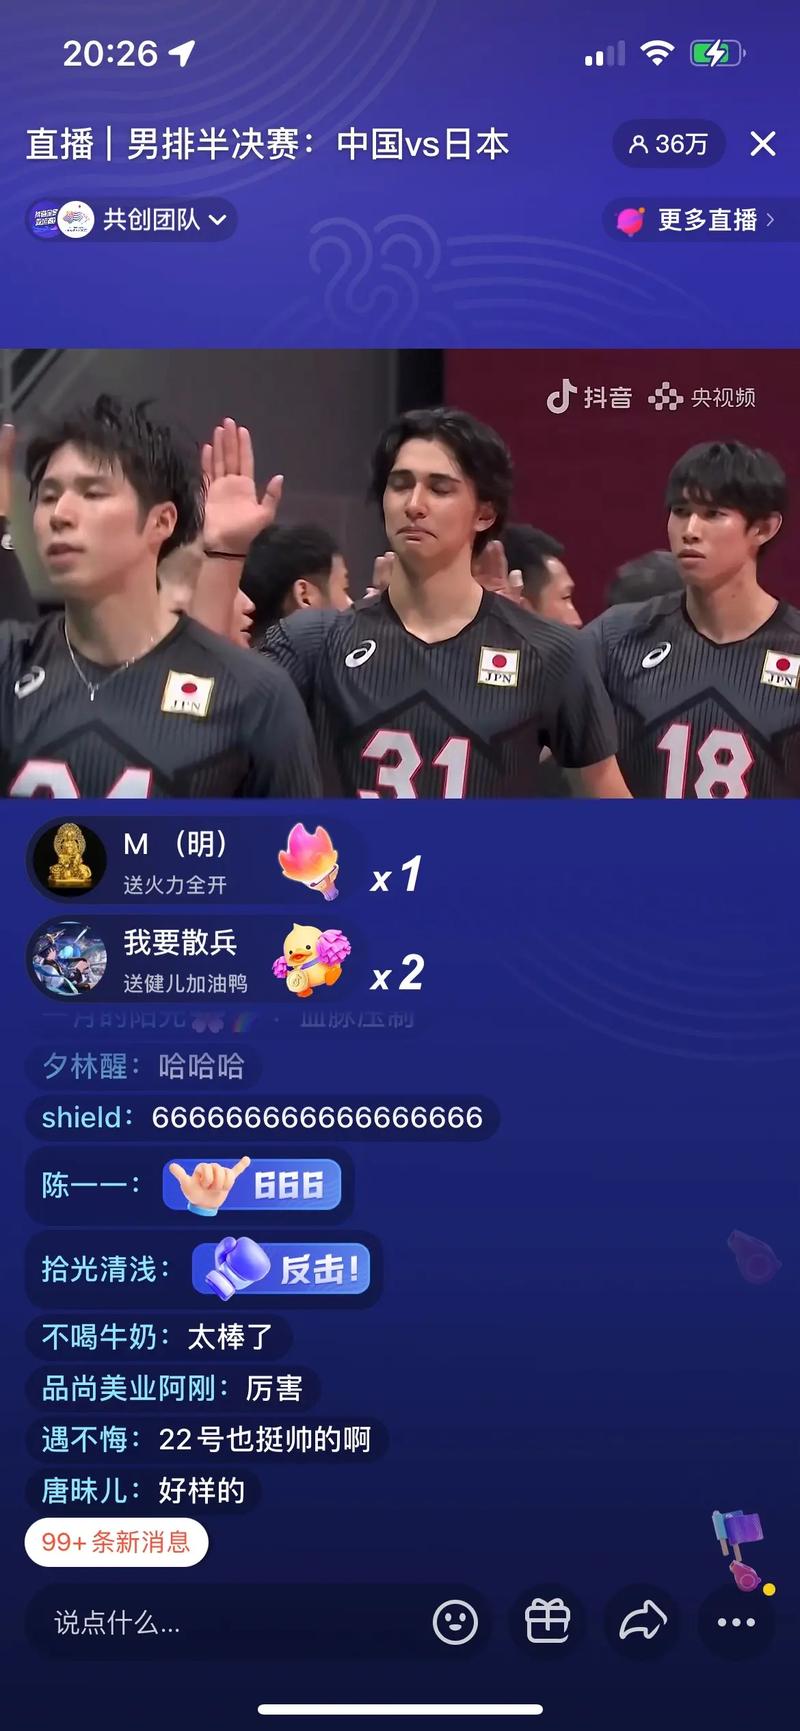 男排日本队vs韩国队比分的相关图片